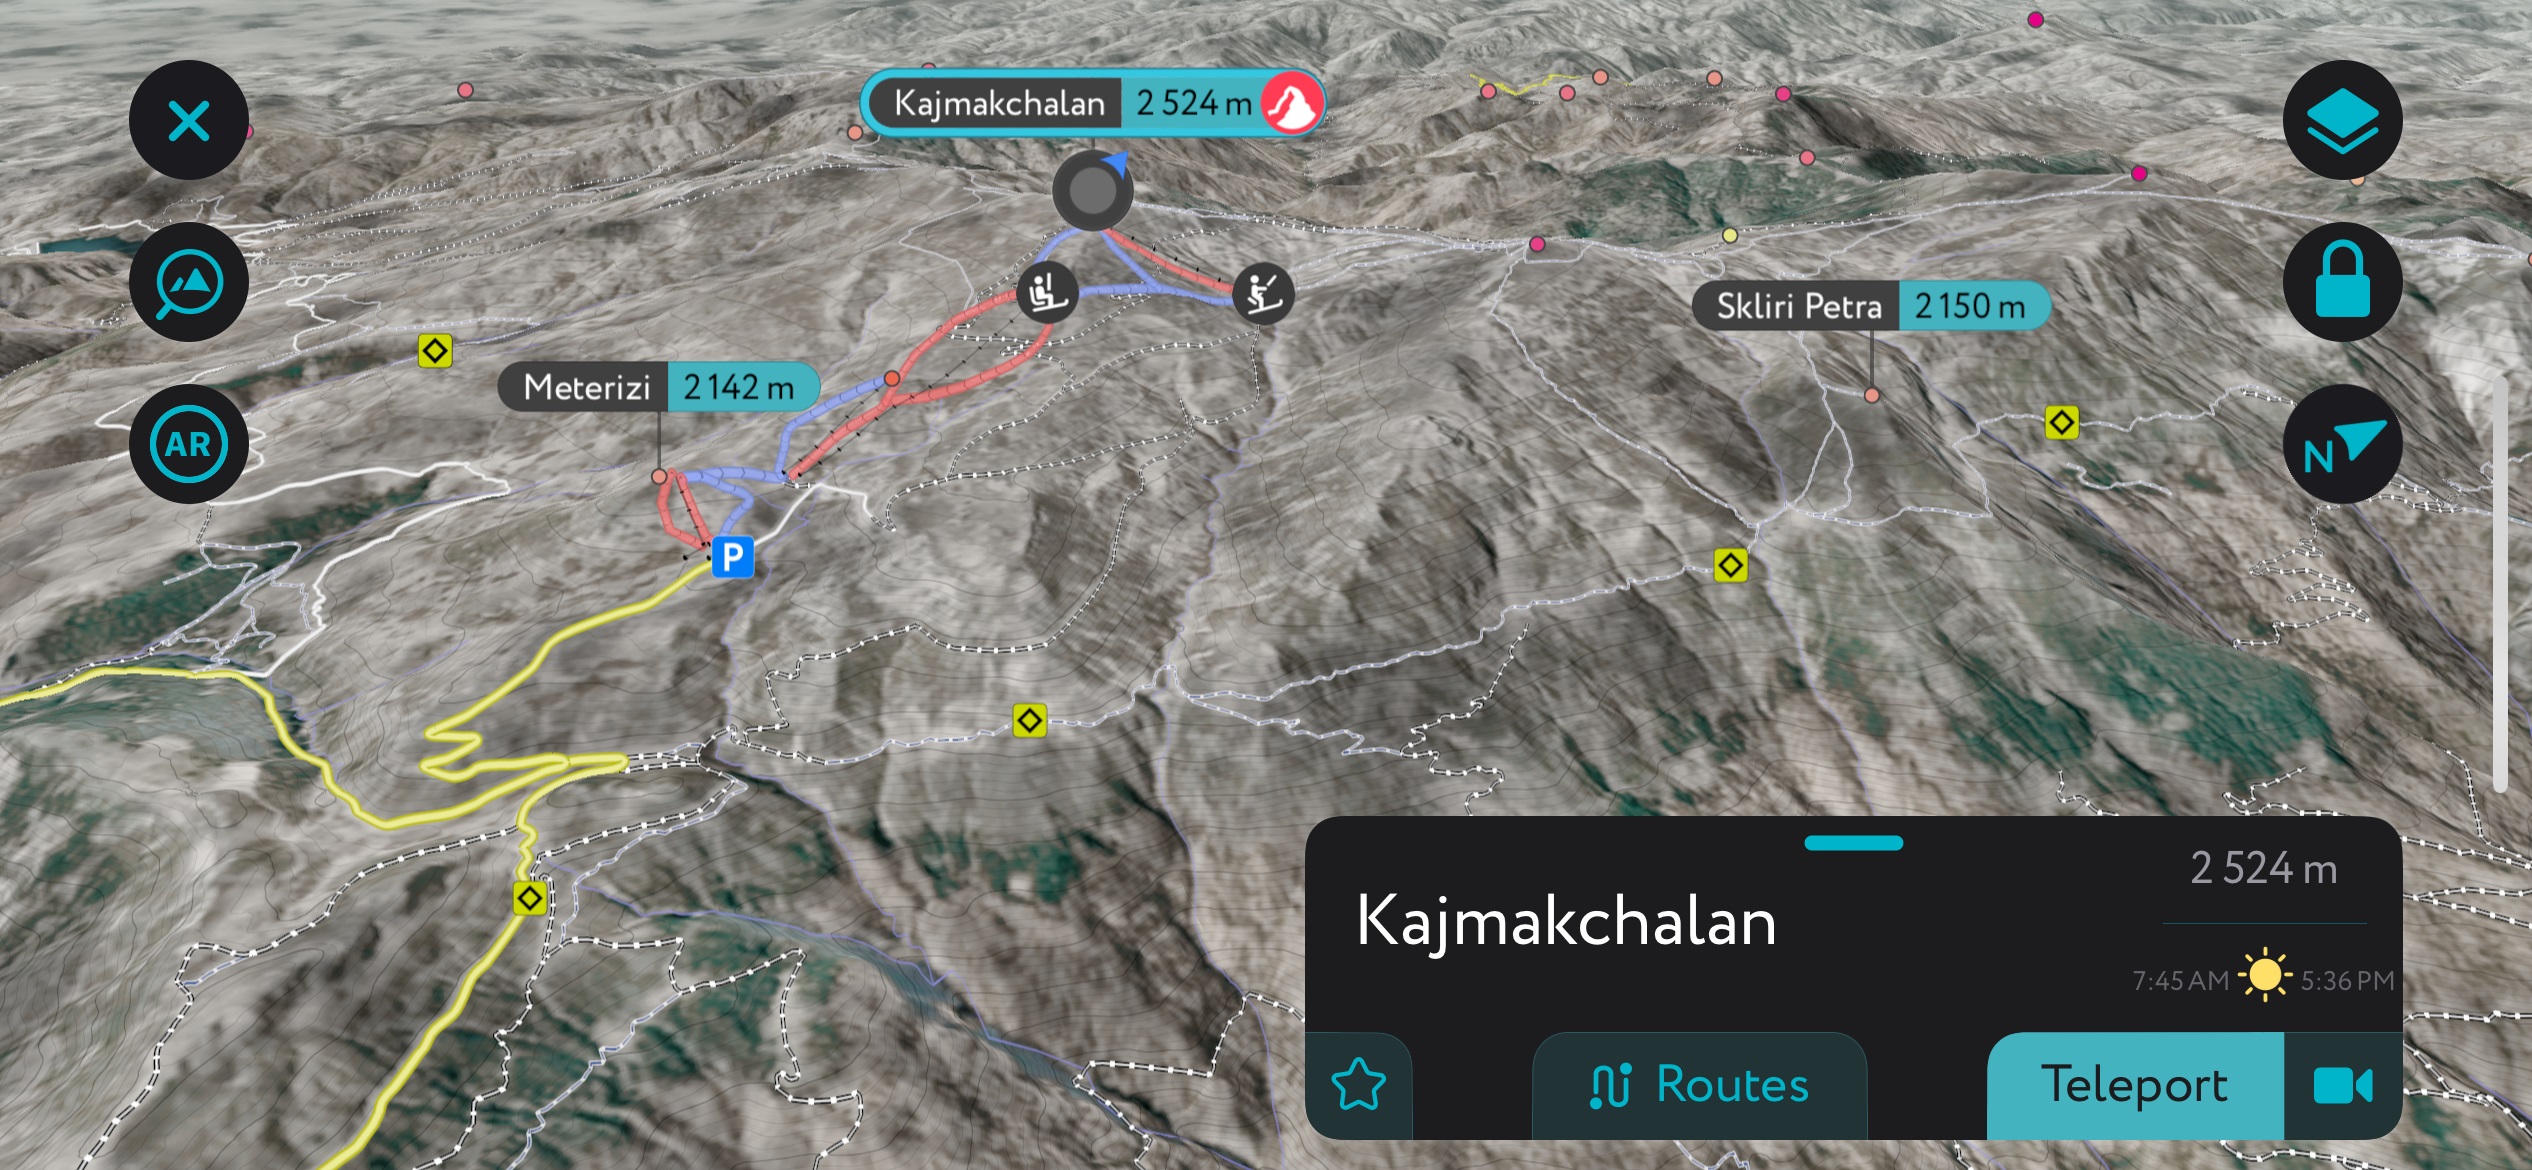 Kaimaktsalan Ski Center on PeakVisor’s mobile app. Voras Mountains